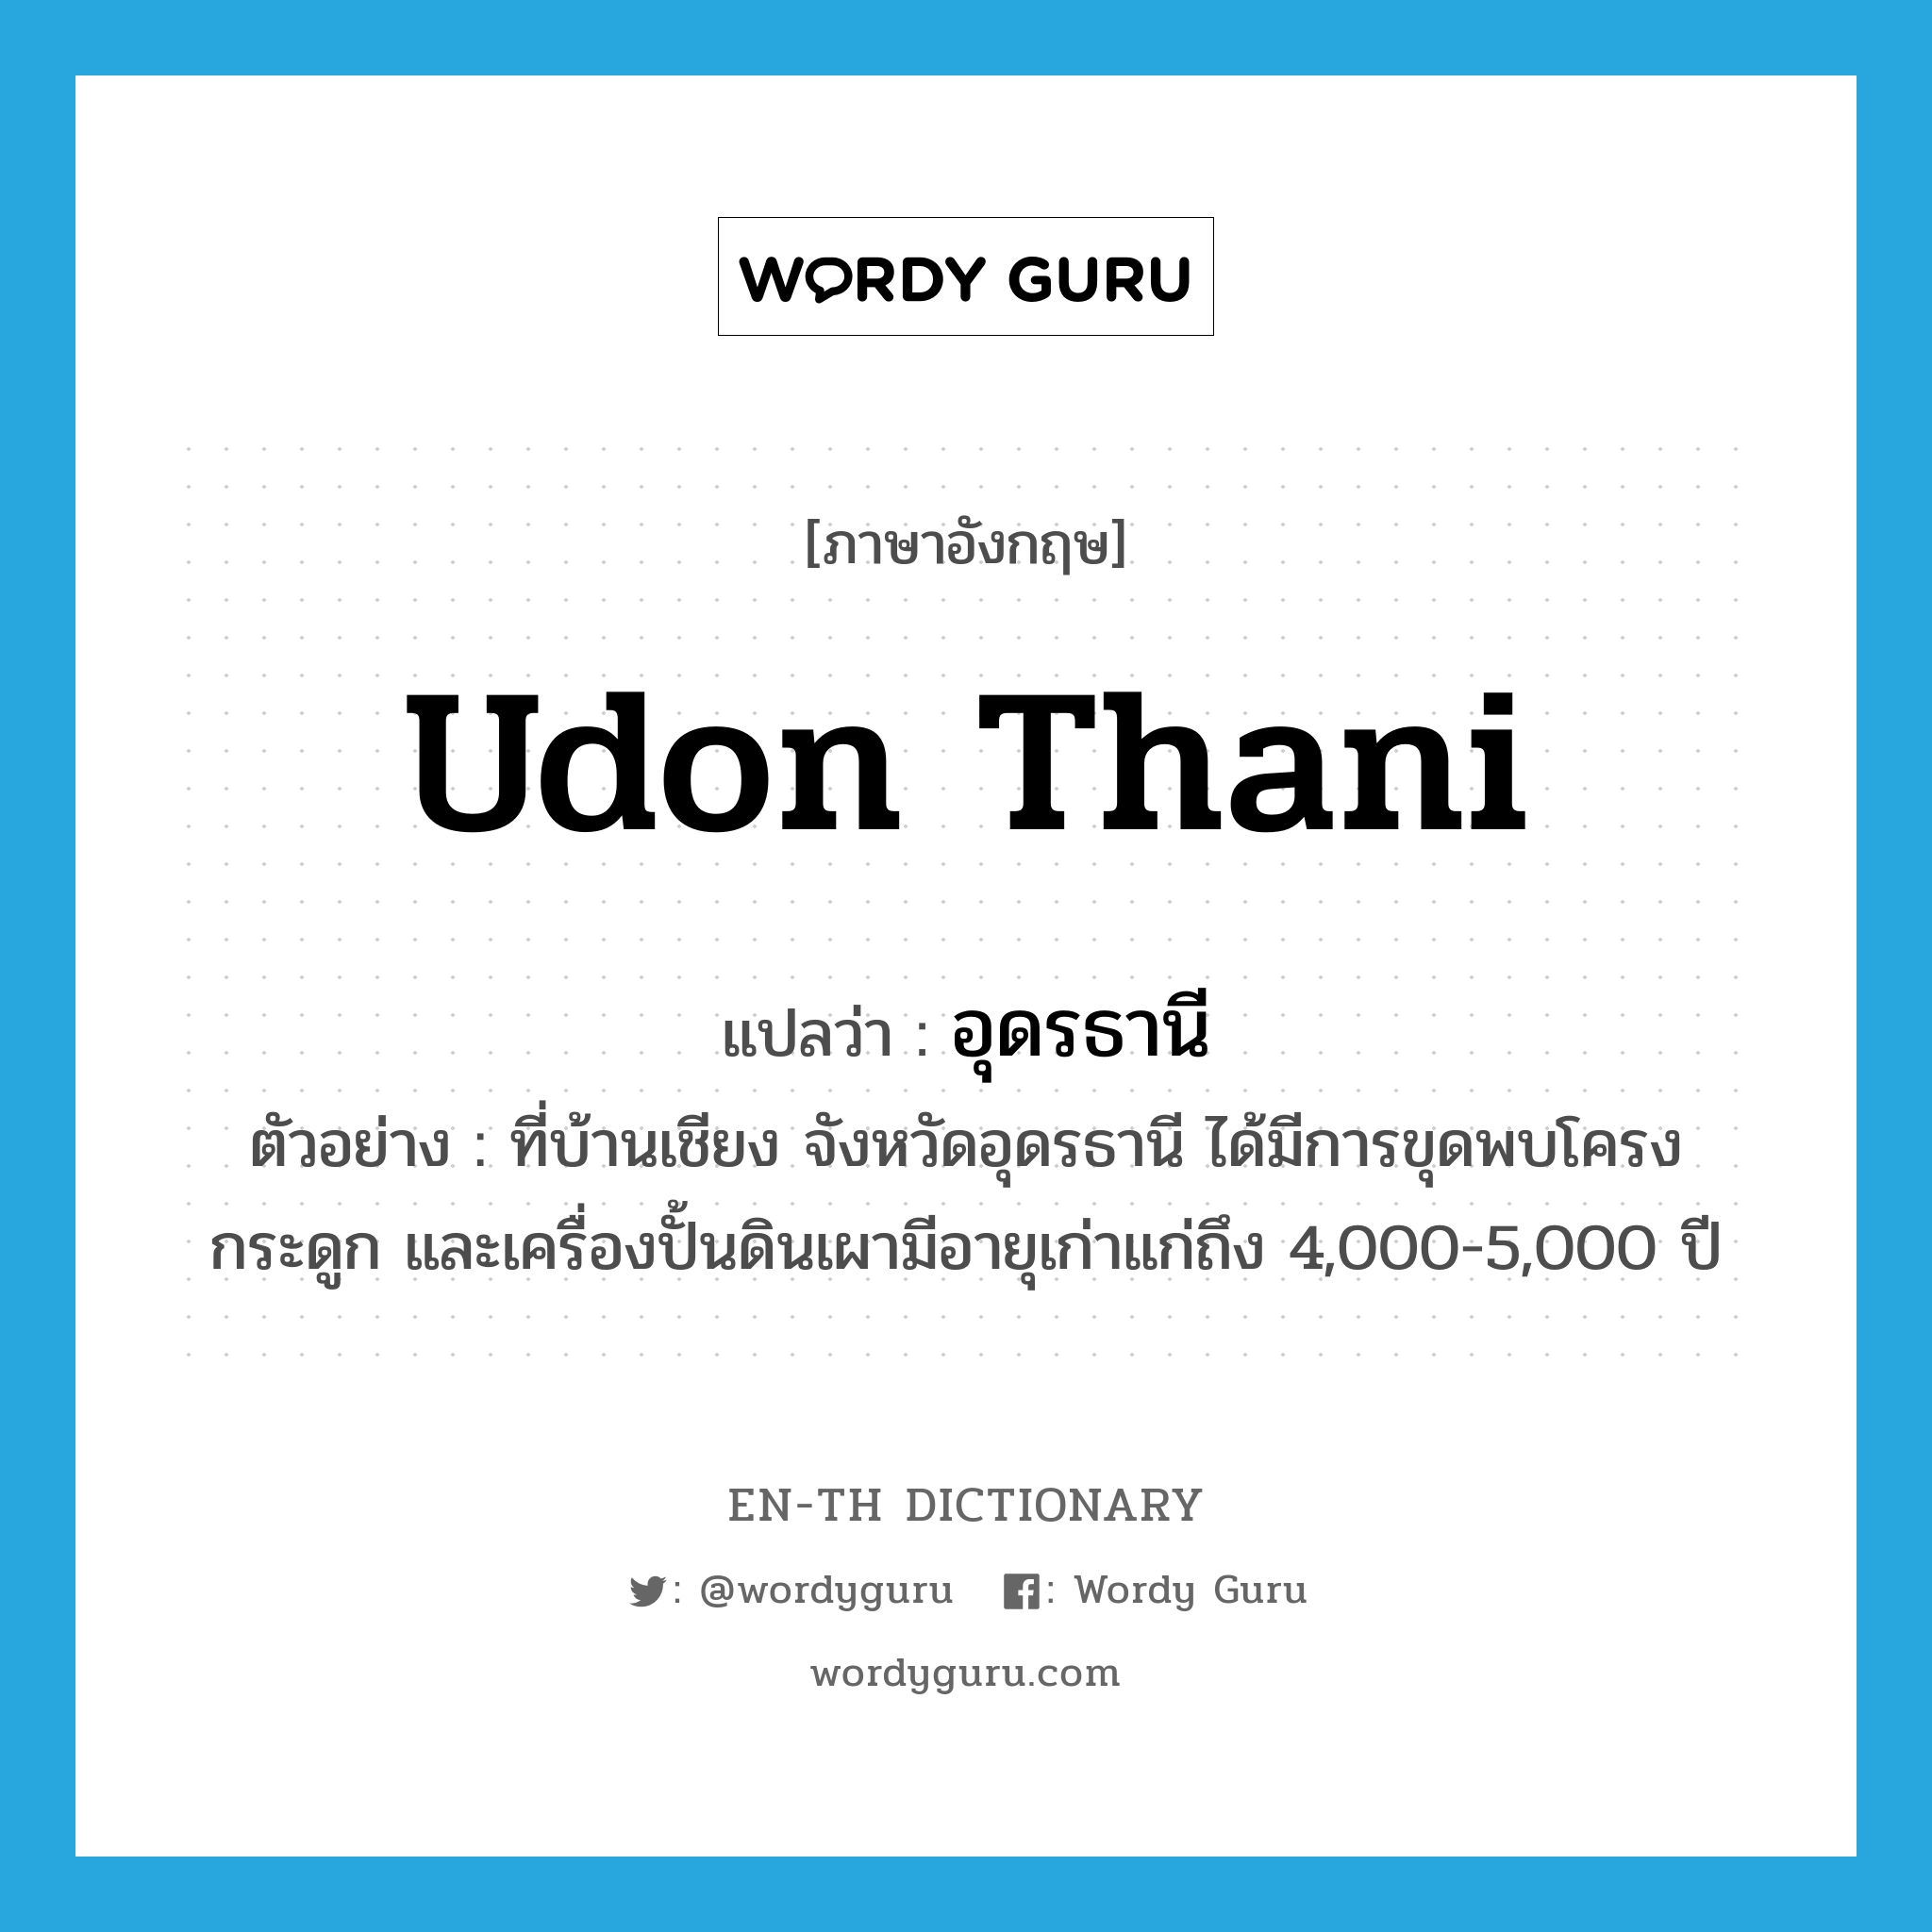 Udon Thani แปลว่า?, คำศัพท์ภาษาอังกฤษ Udon Thani แปลว่า อุดรธานี ประเภท N ตัวอย่าง ที่บ้านเชียง จังหวัดอุดรธานี ได้มีการขุดพบโครงกระดูก และเครื่องปั้นดินเผามีอายุเก่าแก่ถึง 4,000-5,000 ปี หมวด N